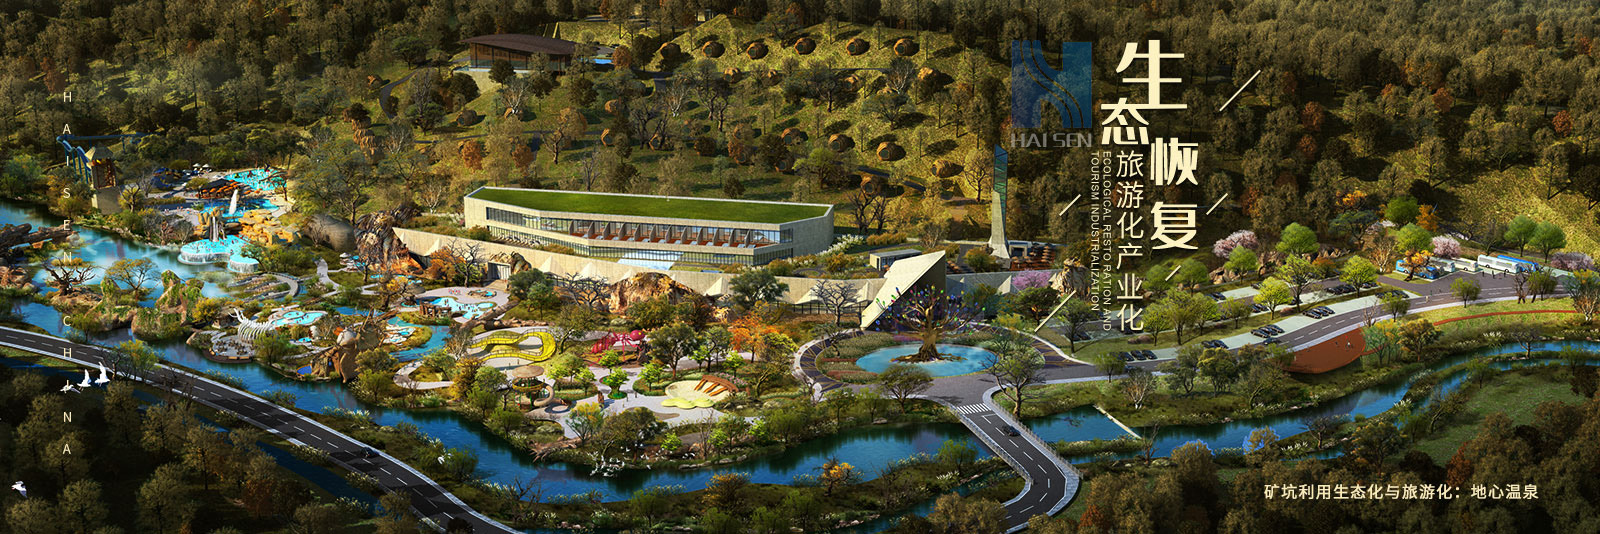 海森温泉设计院负责浙江遂昌地心公园的温泉设计、温泉规划、温泉策划。